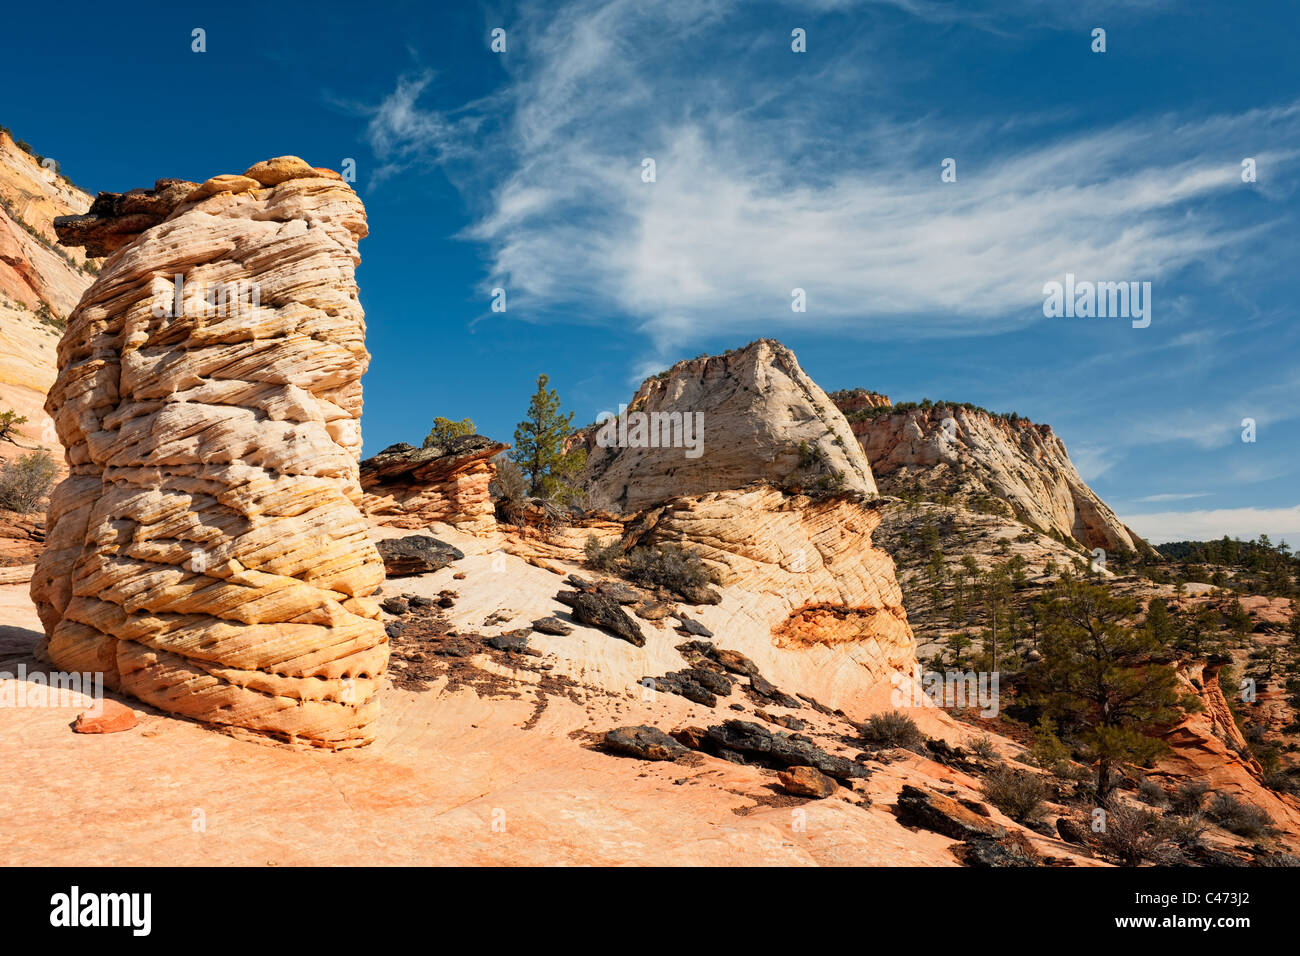 Le côté est de l'Utah Zion National Park contient de nombreux Monolithes de grès Navajo et érodé hoodoos en forme. Banque D'Images